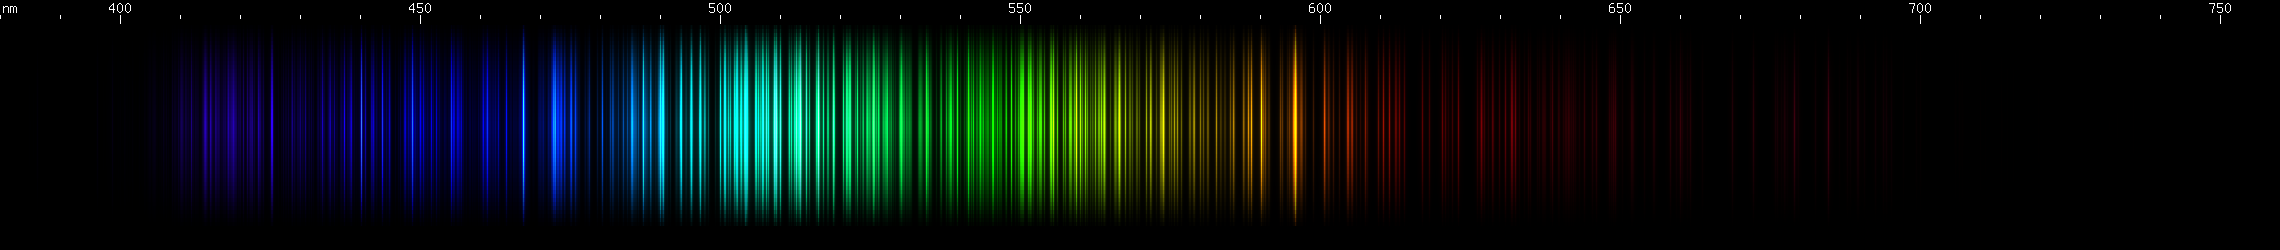 Spectral Lines of Erbium